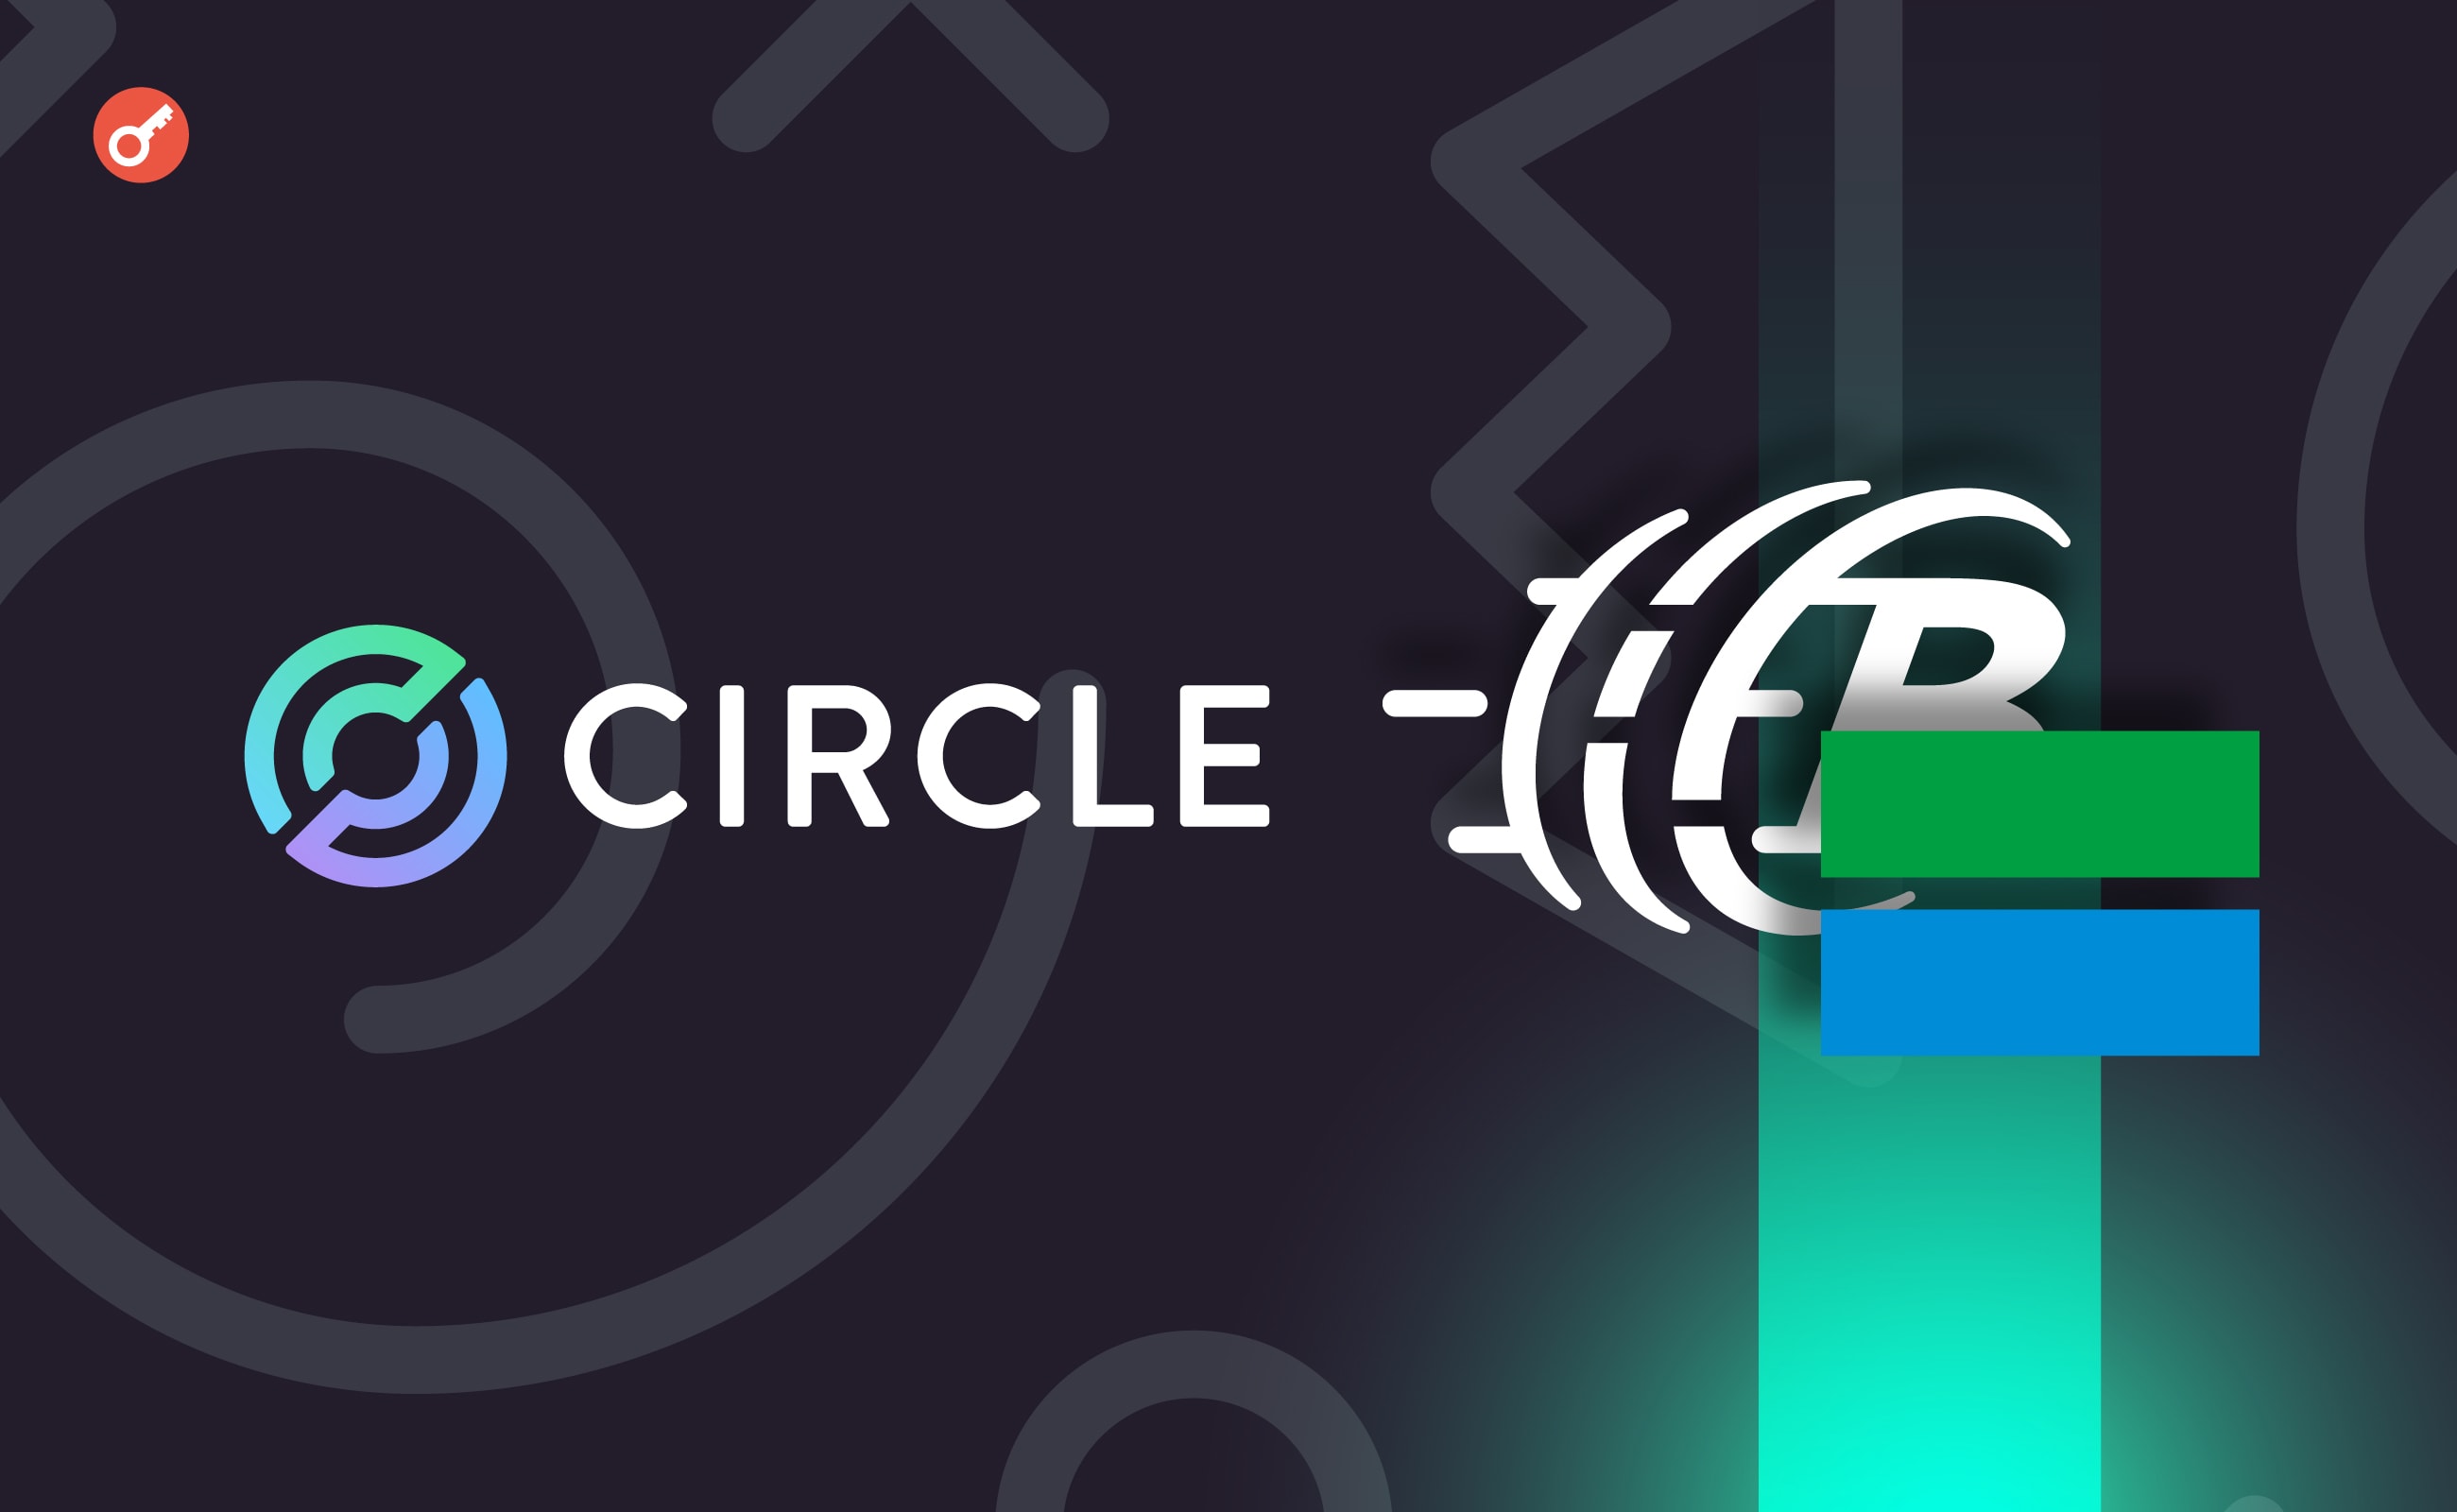 Circle оголосила про партнерство з тайванськими фірмами BitoGroup і FamilyMart. Головний колаж новини.